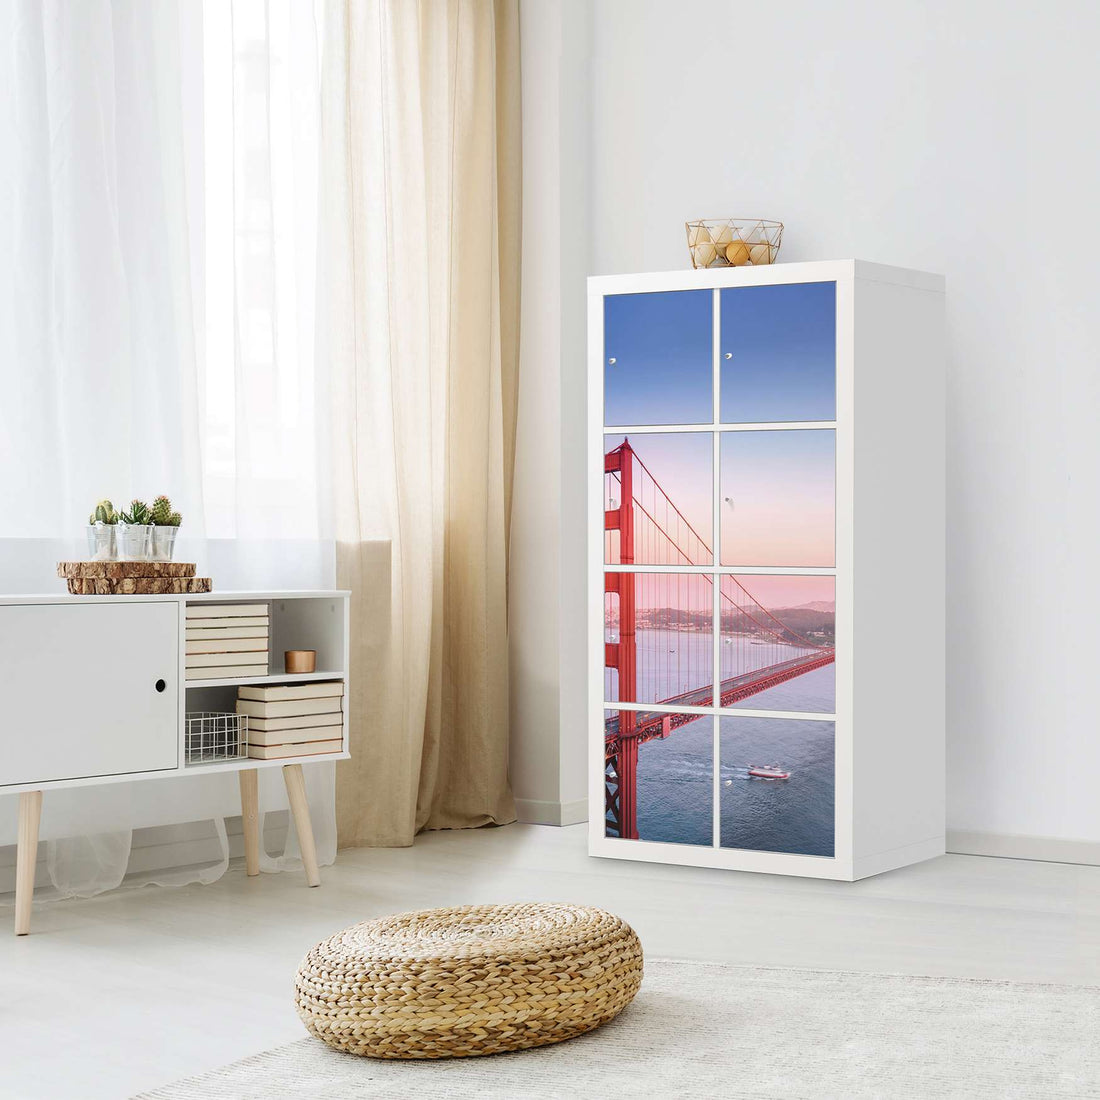 Folie für Möbel Golden Gate - IKEA Kallax Regal 8 Türen - Wohnzimmer